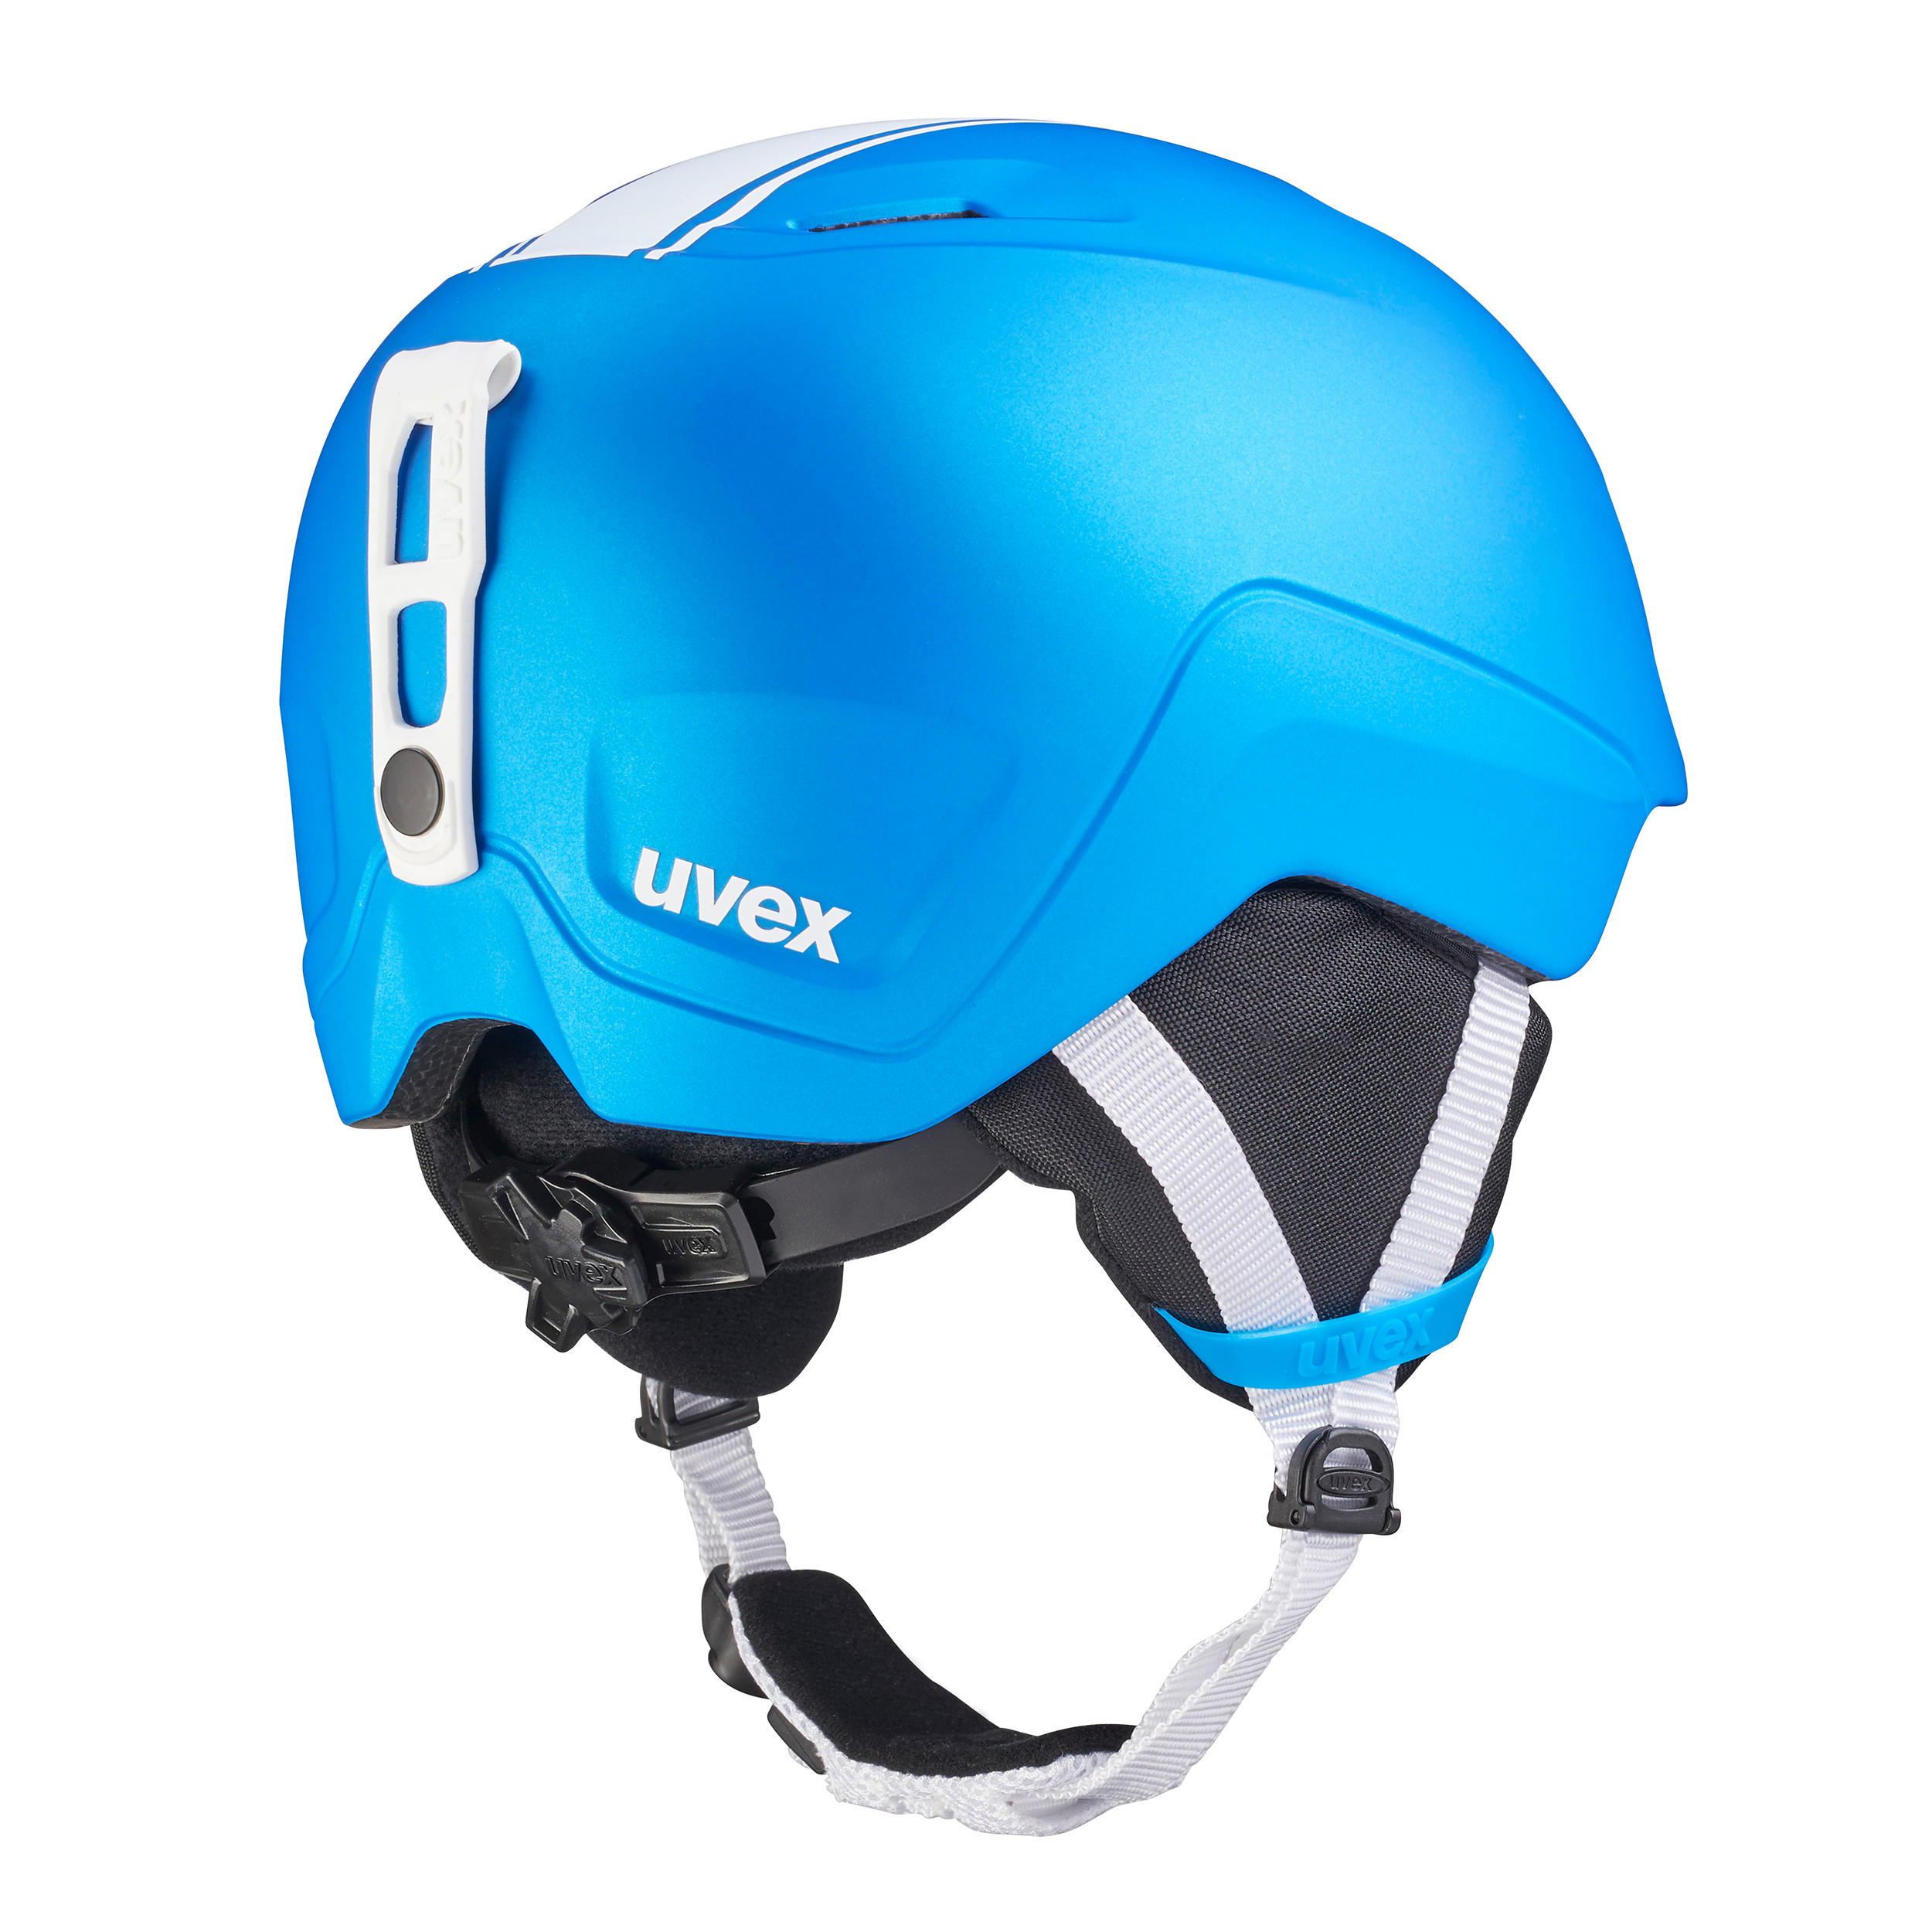 Helmet Pro Race Blue 9/9